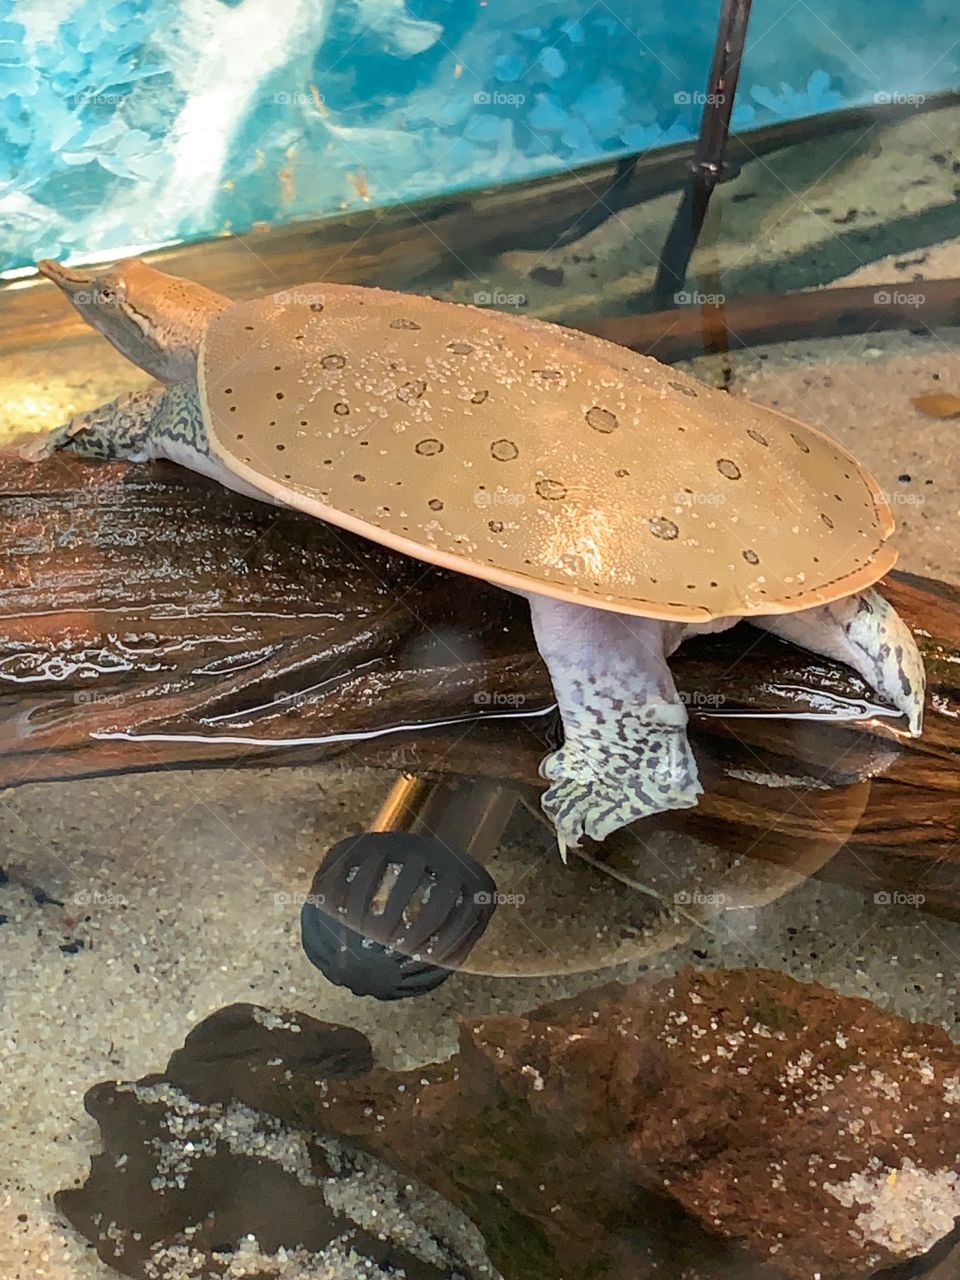 Pancake Turtle on a Log